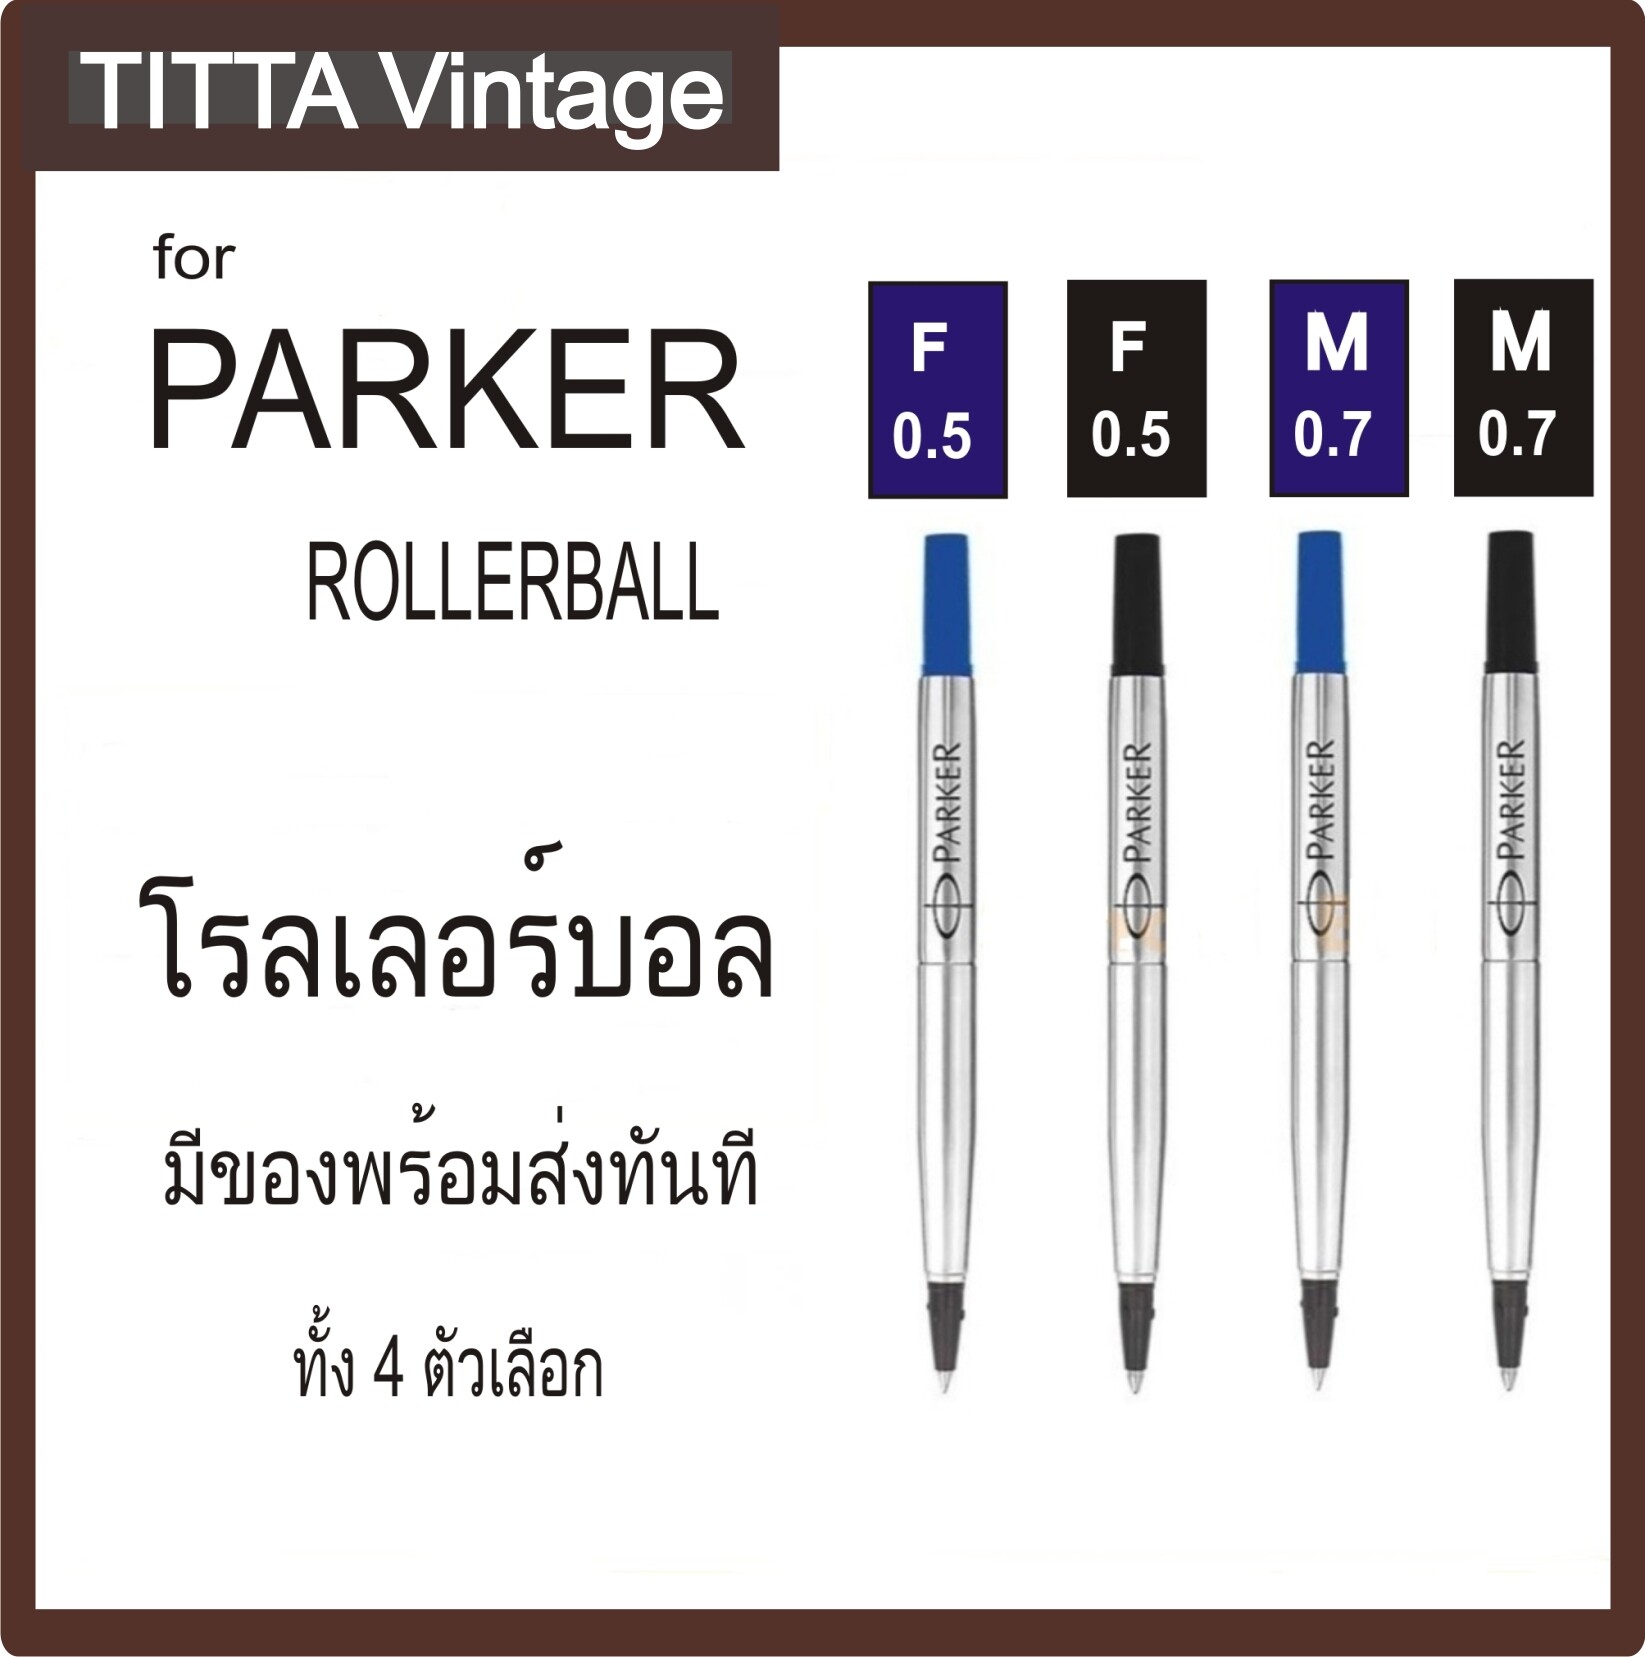 ไส้ปากกาสำหรับ PARKER โรลเลอร์บอล มี 4 ตัวเลือก